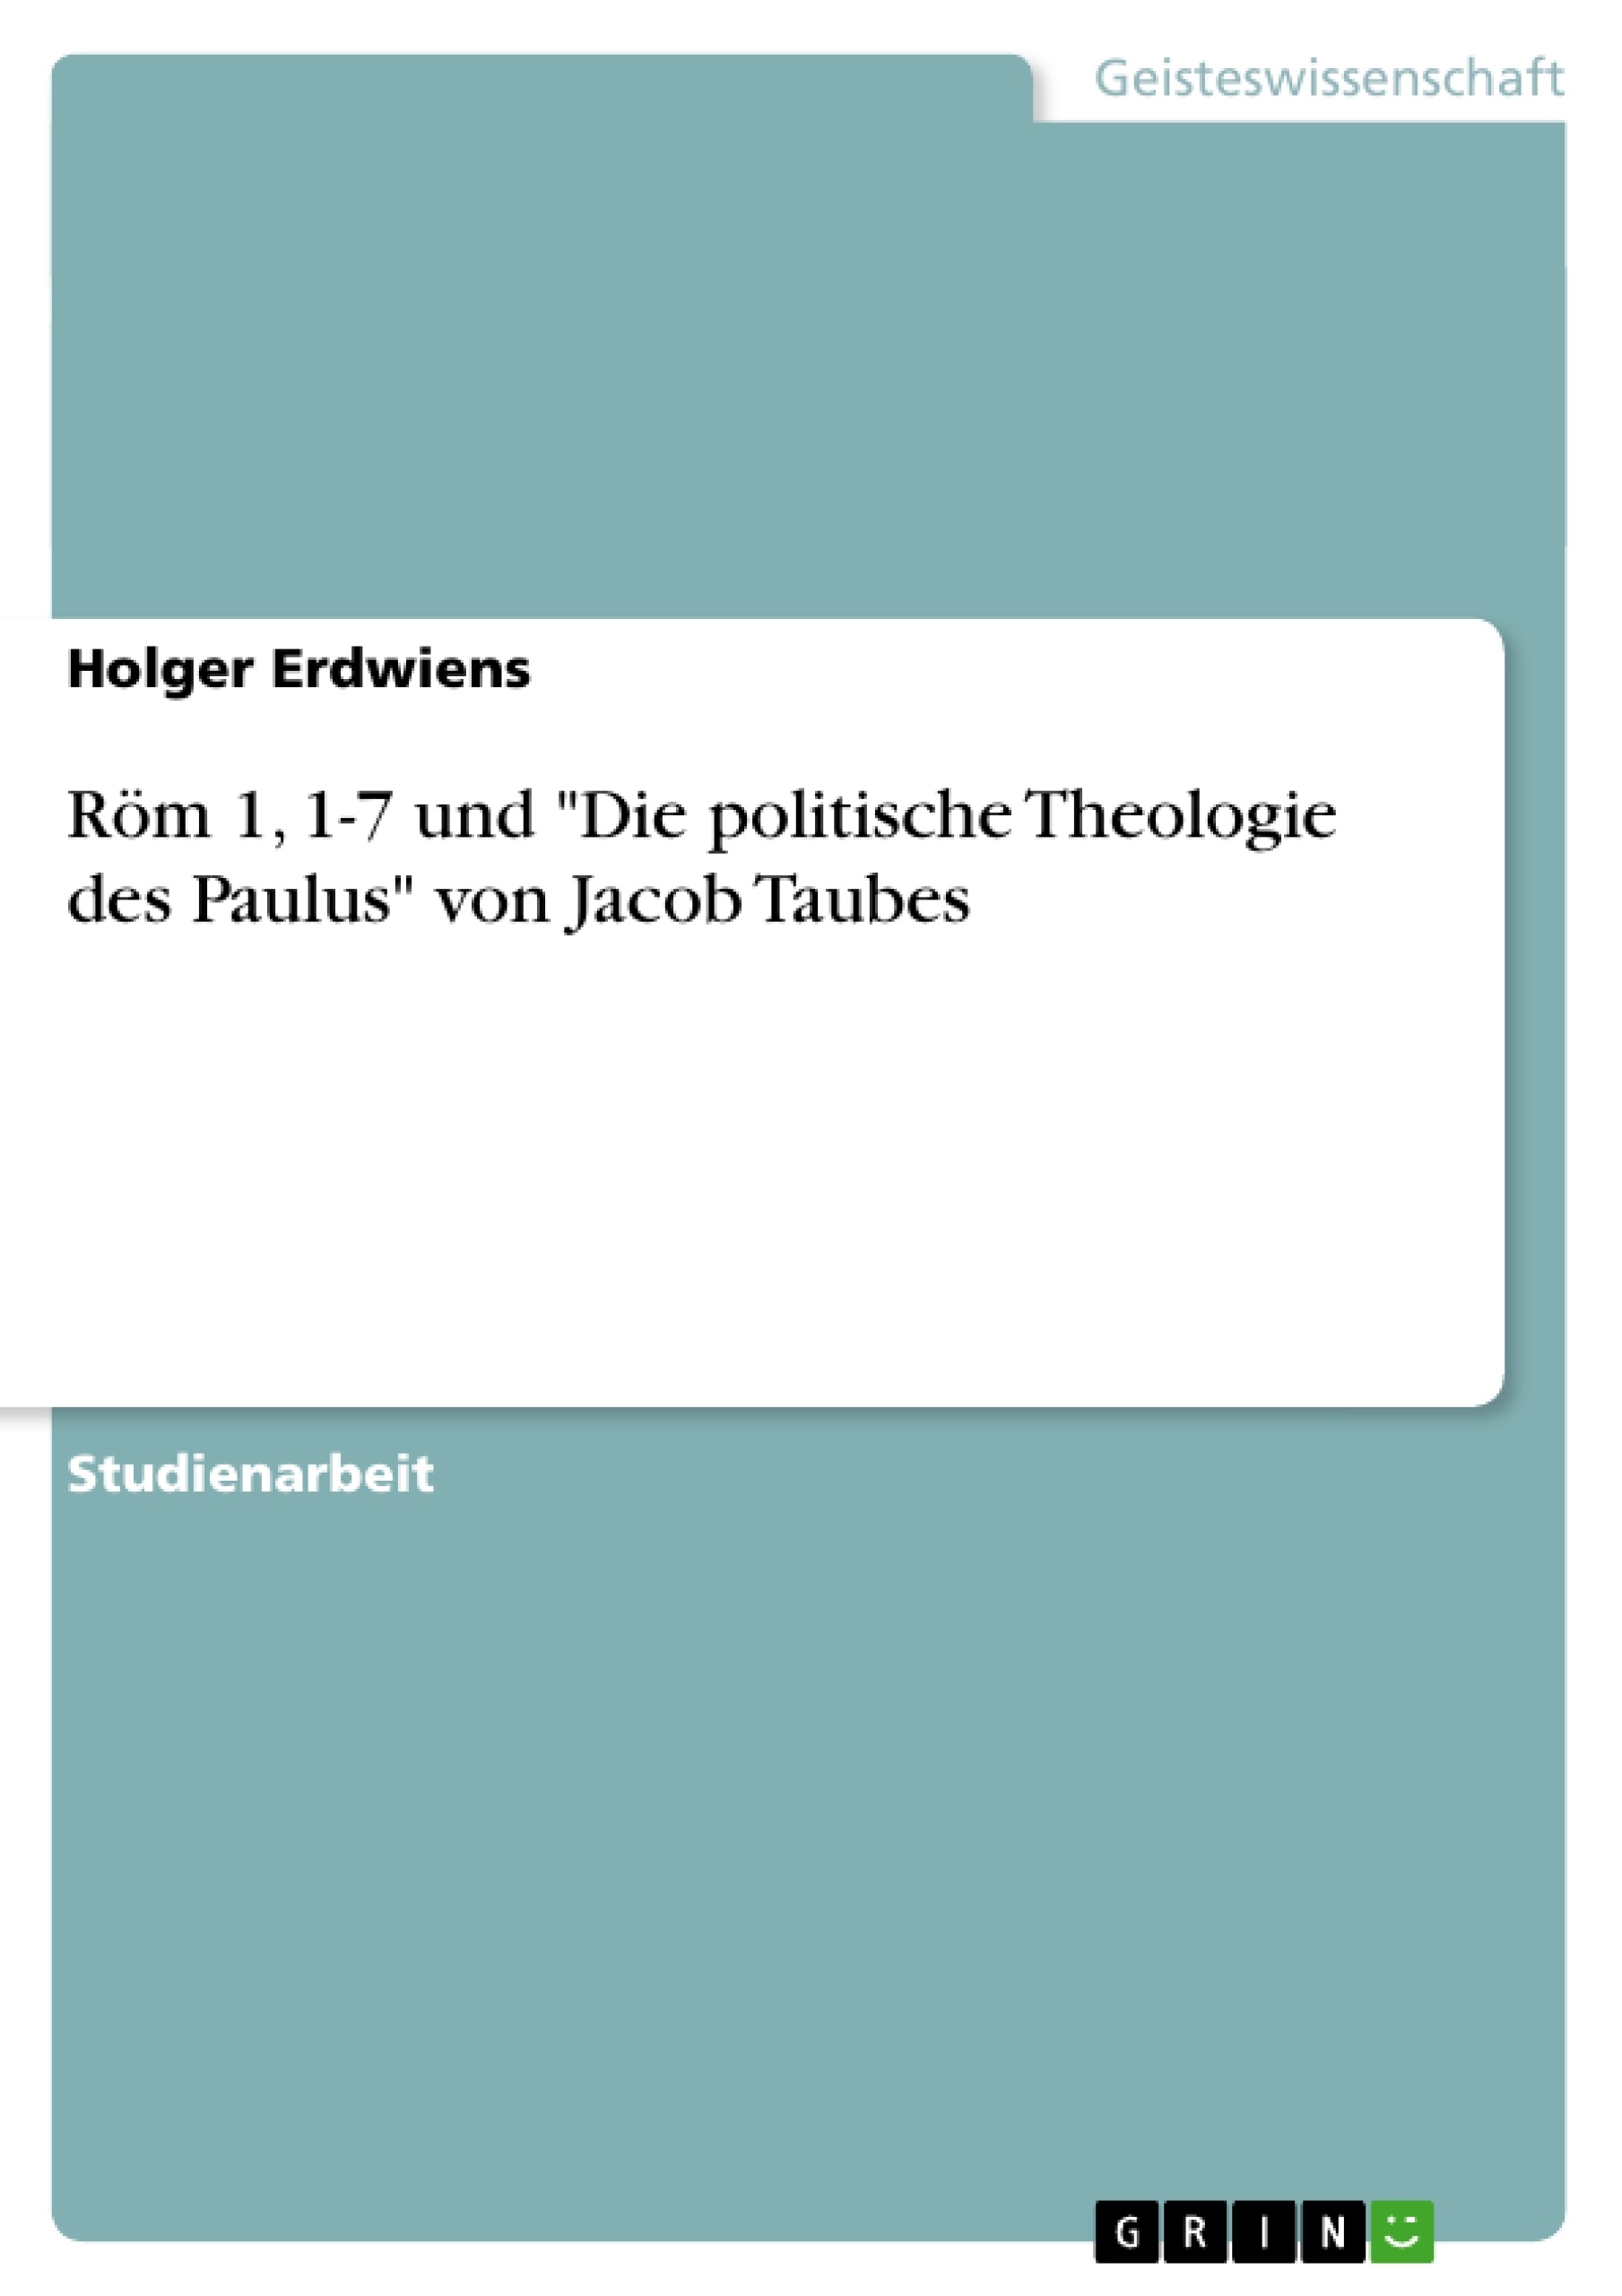 Título: Röm 1, 1-7 und "Die politische Theologie des Paulus" von Jacob Taubes